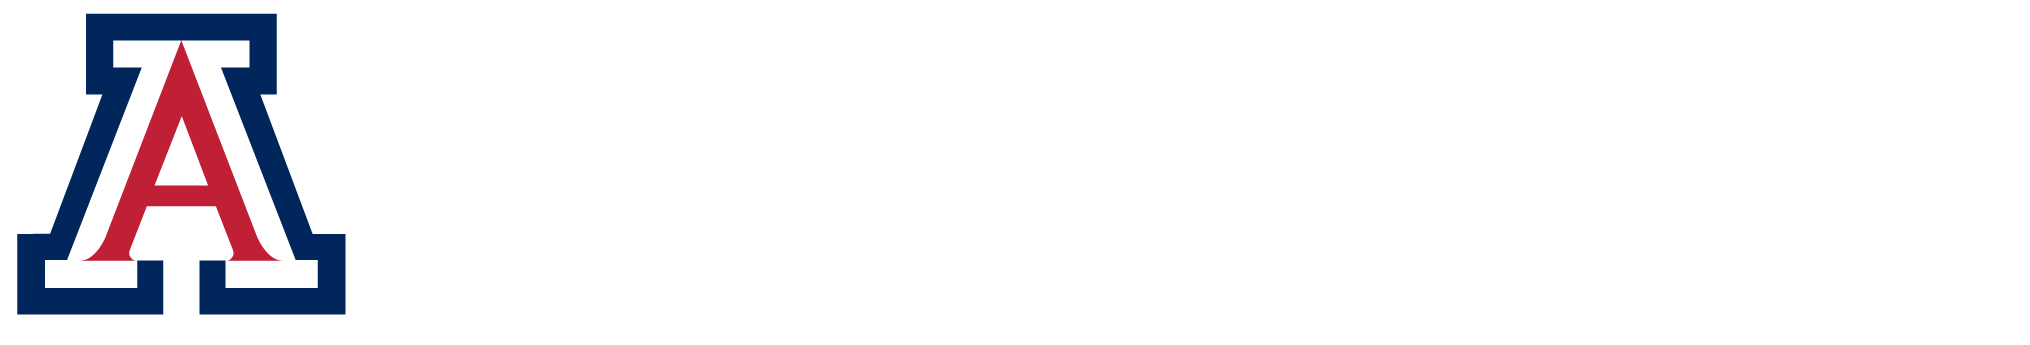 Univeristy of Arizona Logo - Facilities Management of Arizona